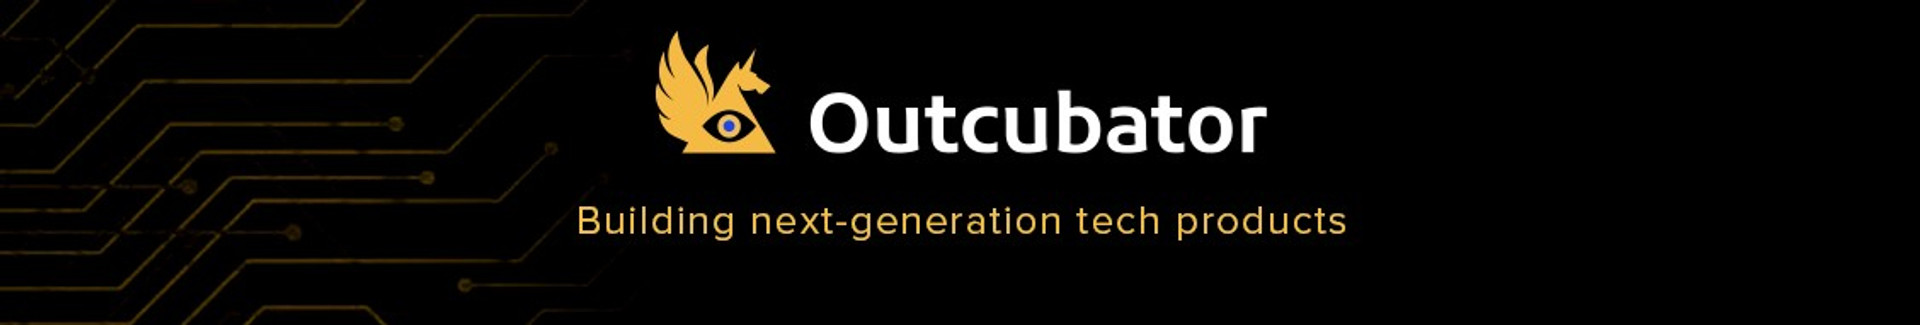 Outcubator